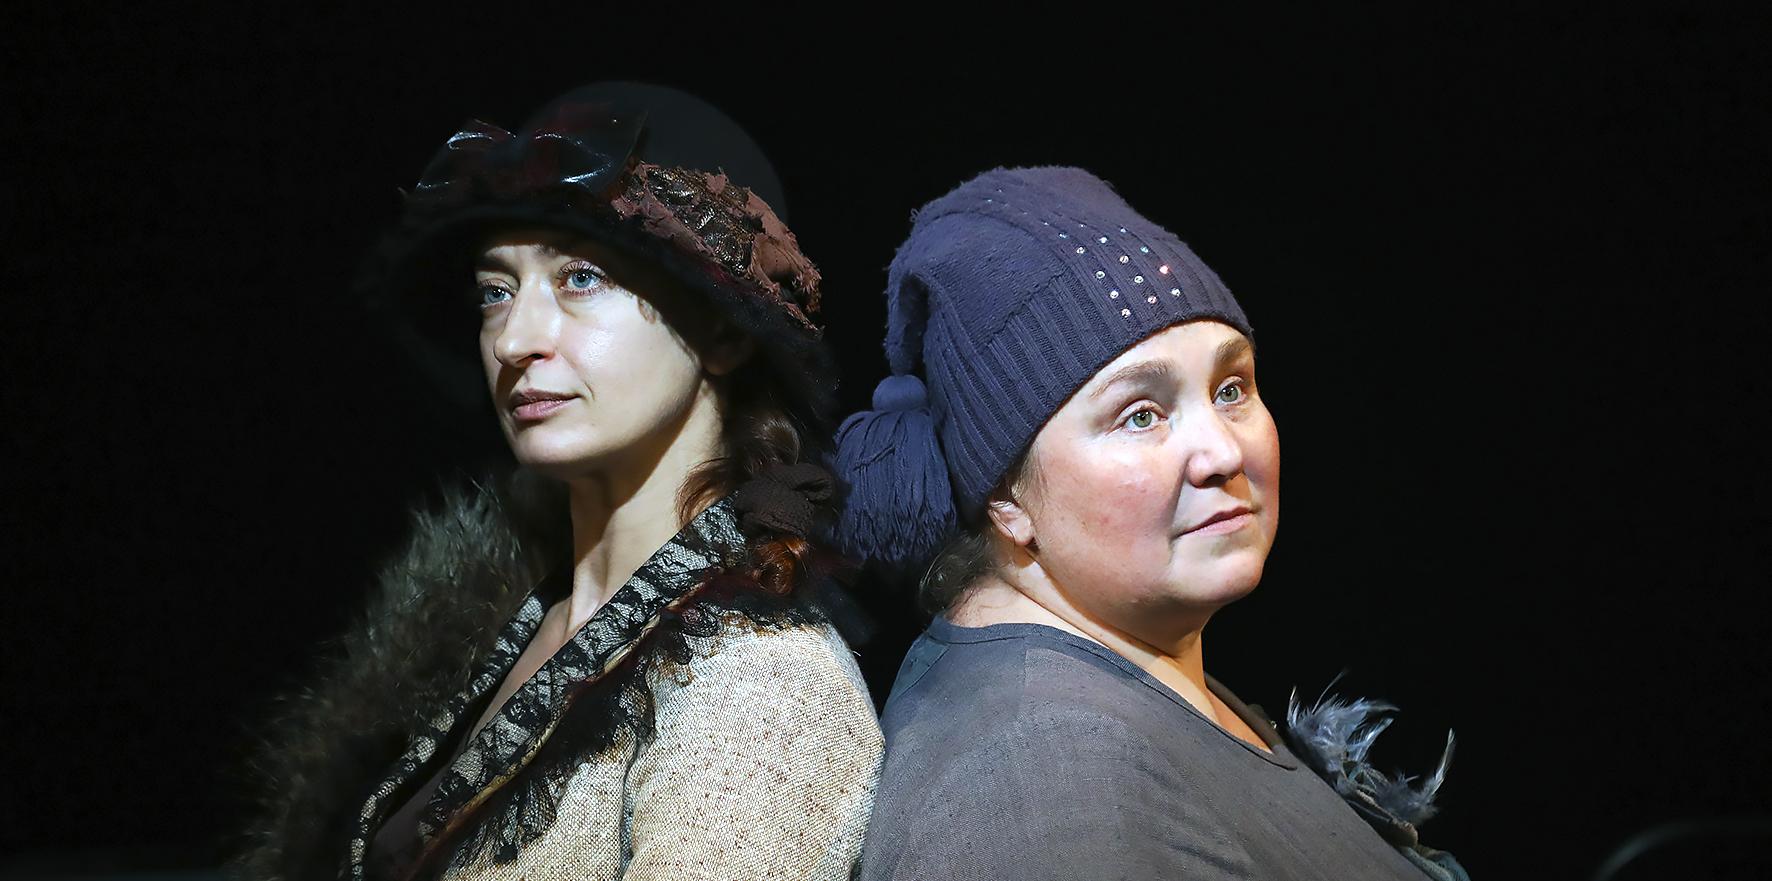 Спектакль «Две дамочки в сторону севера» в Театре на Васильевском со скидкой 30%